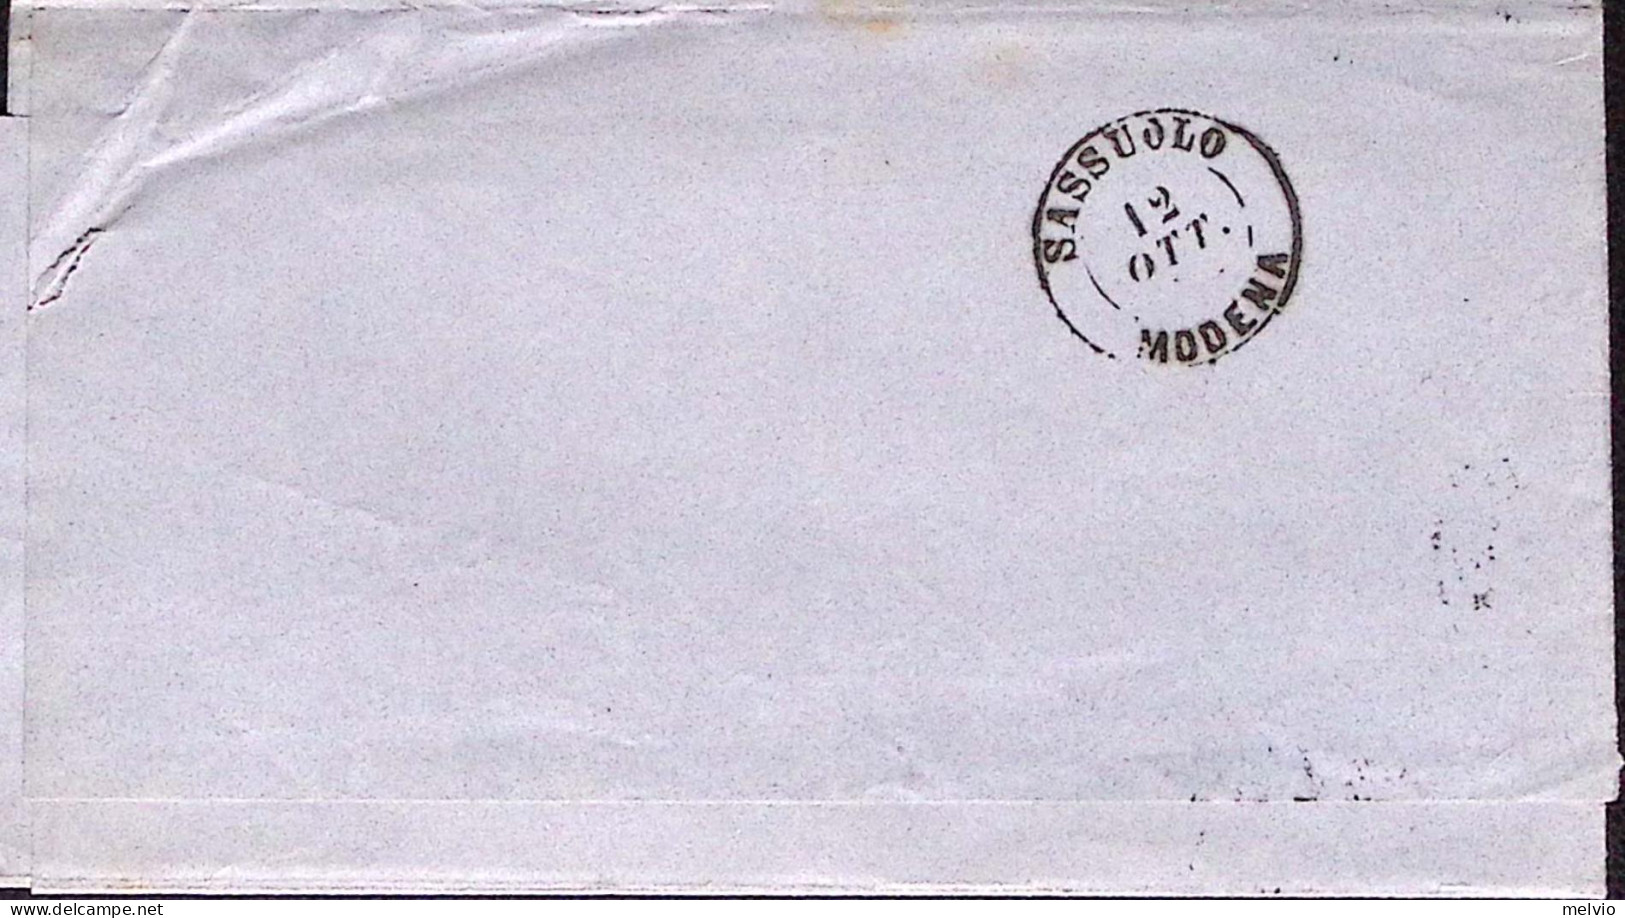 1880-FR.LLI SERVIZIO Sopr C.2/1,00 Si Sopraccoperta Milano (10.10) - Poststempel